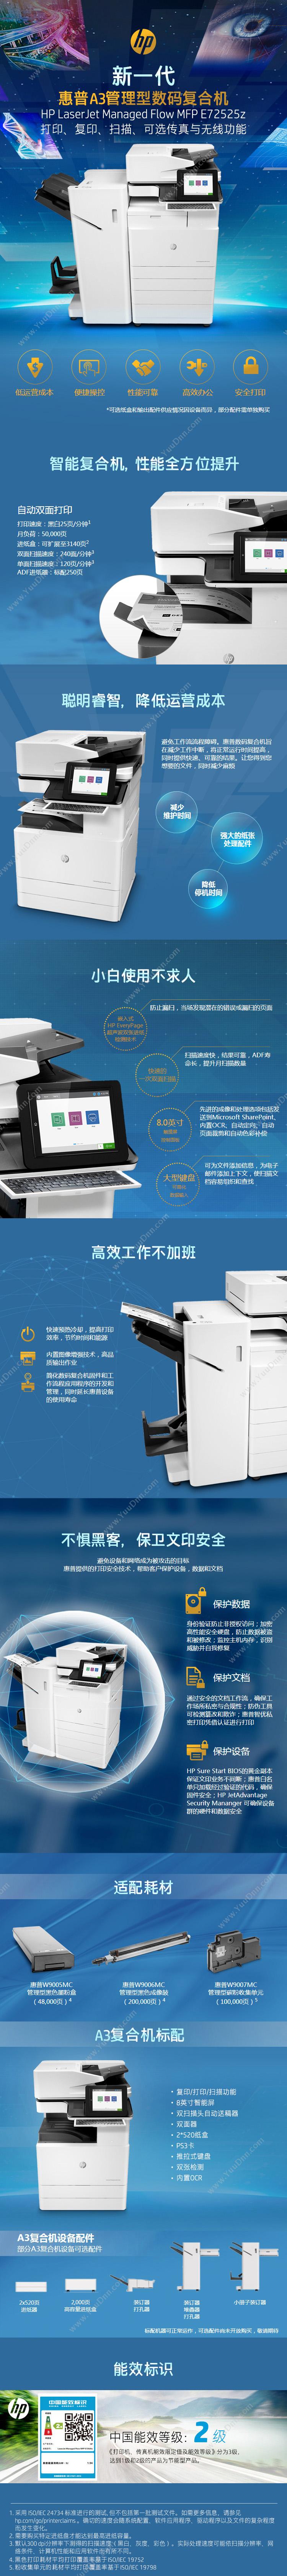 富士施乐 FujiXerox CM118w A4彩色激光打印机